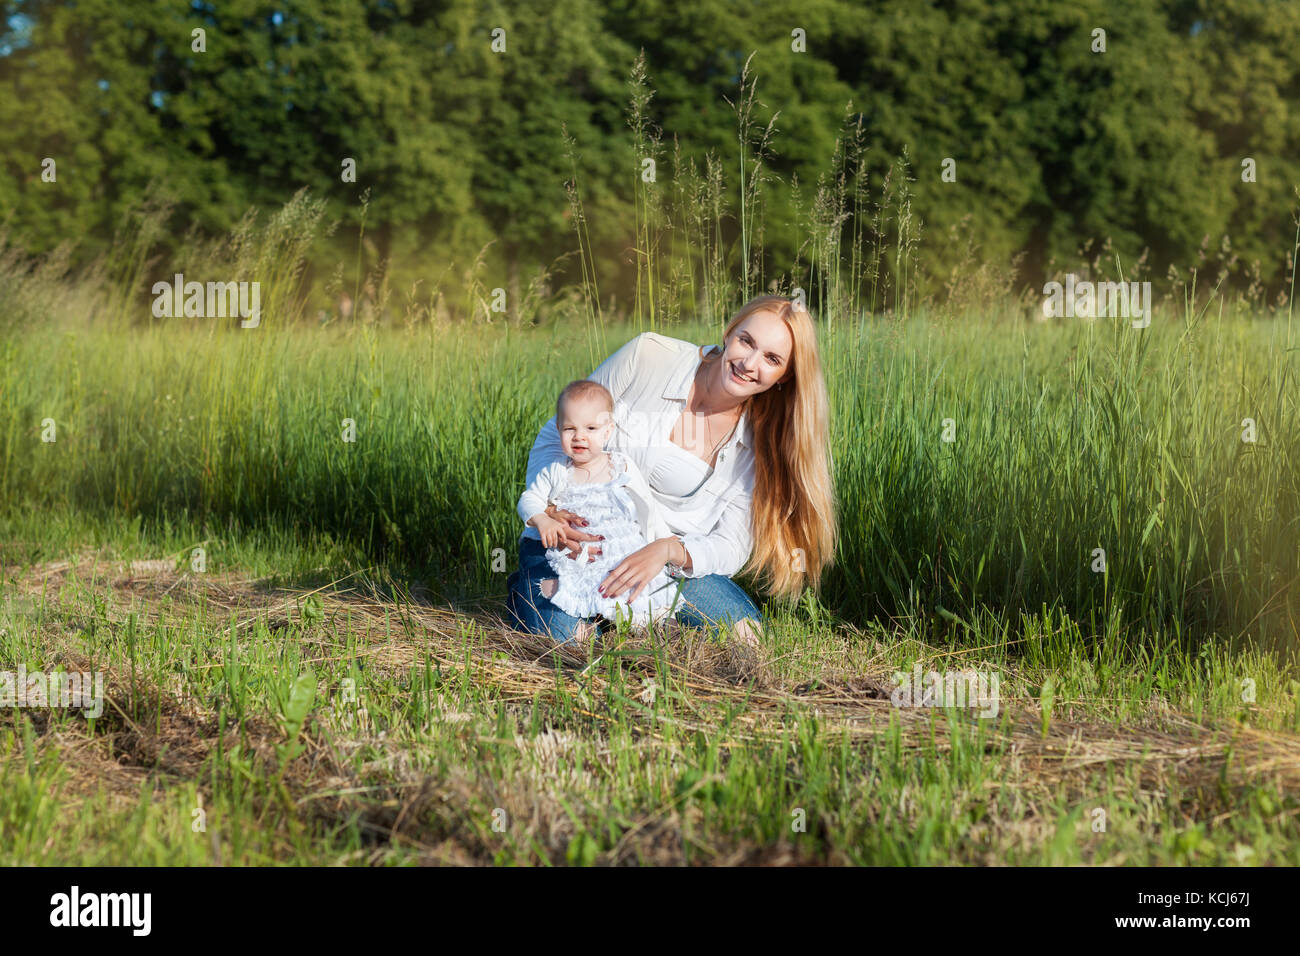 Jeune maman avec sa petite fille dans un champ Banque D'Images